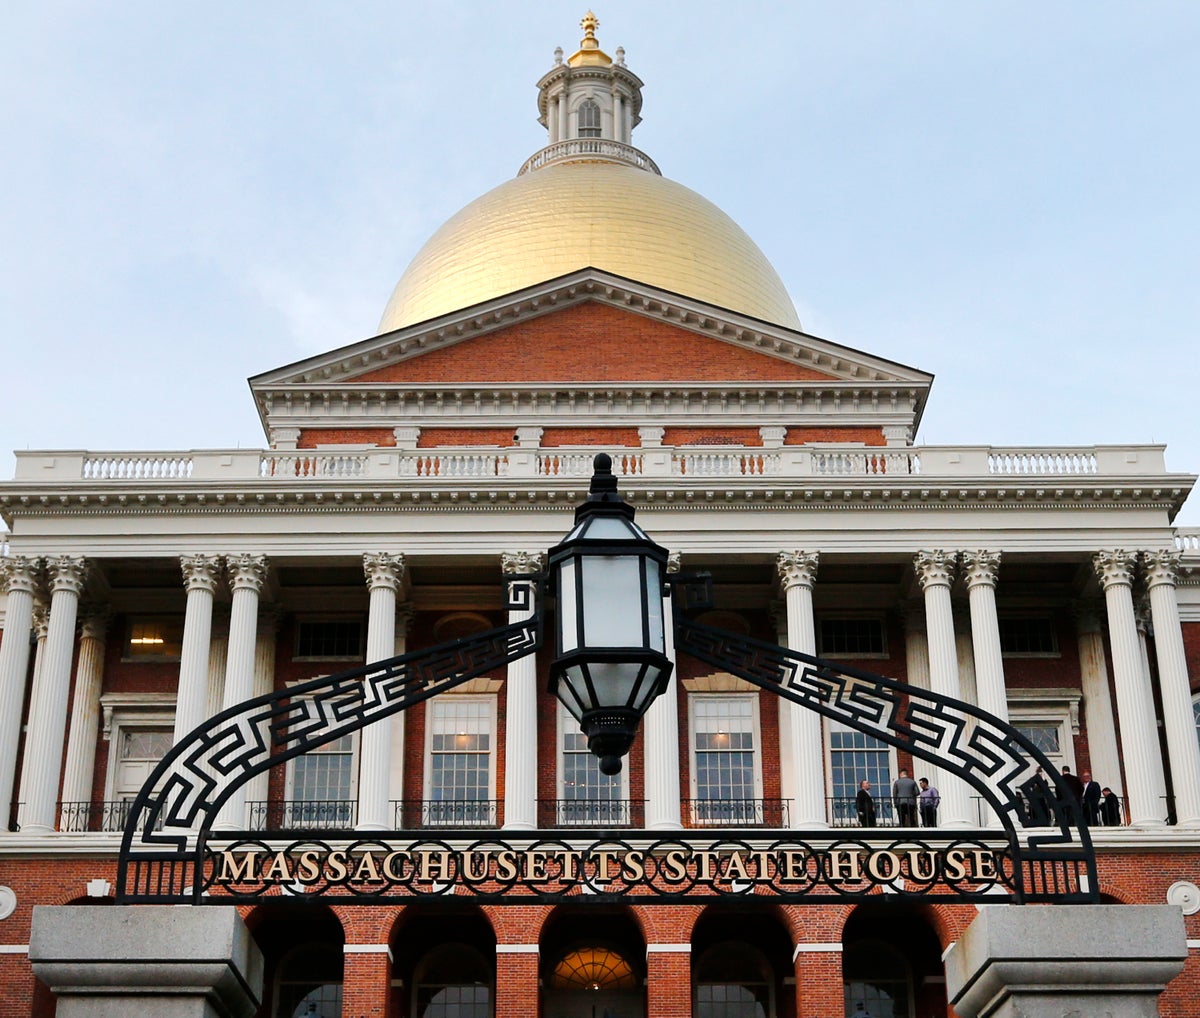 Massachusetts lawmakers reach compromise deal on gun bill